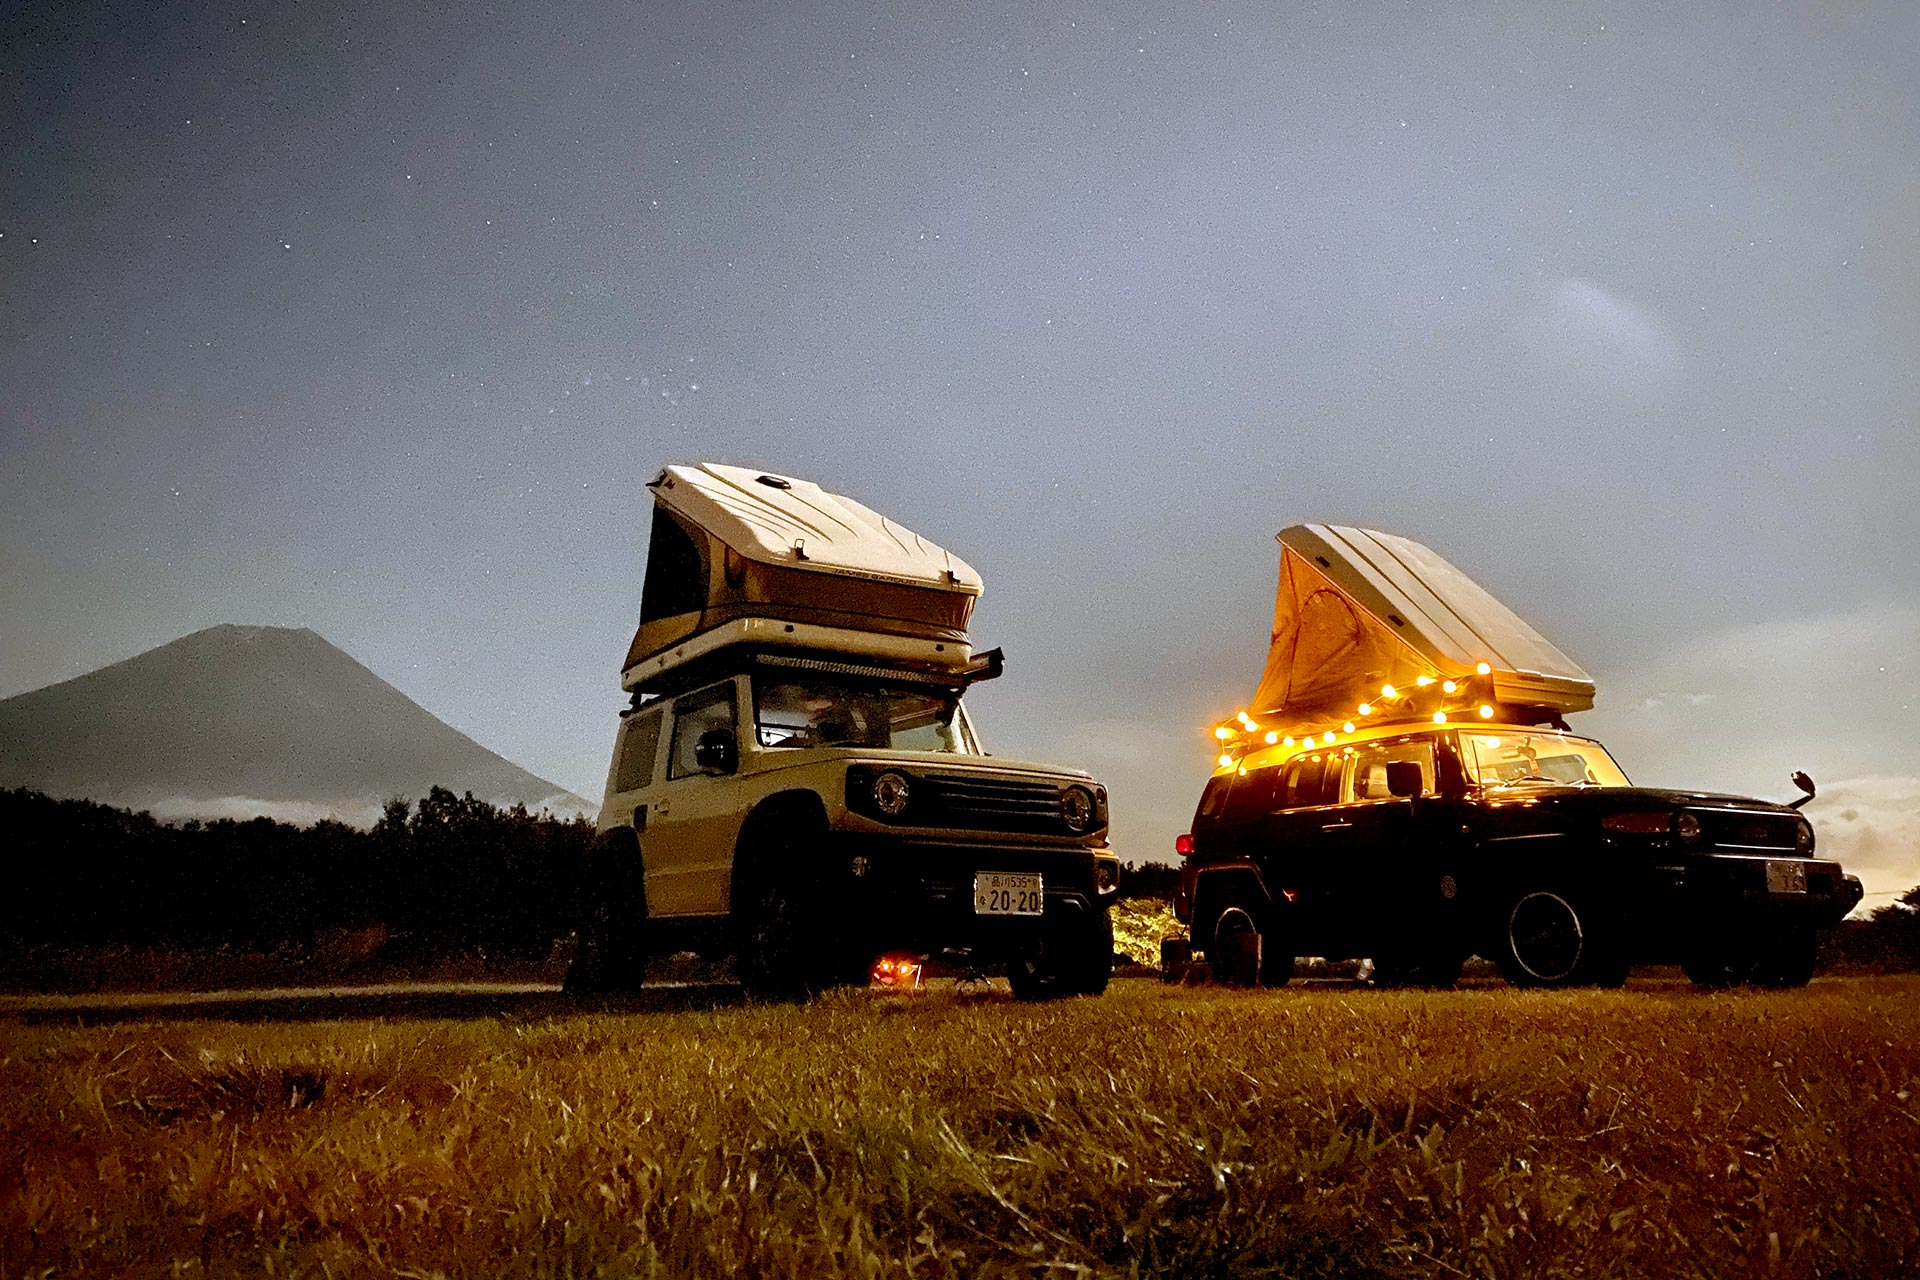 Suzuki Jimny Sierra and FJ Cruiser Camping at Mt Fuji at Night